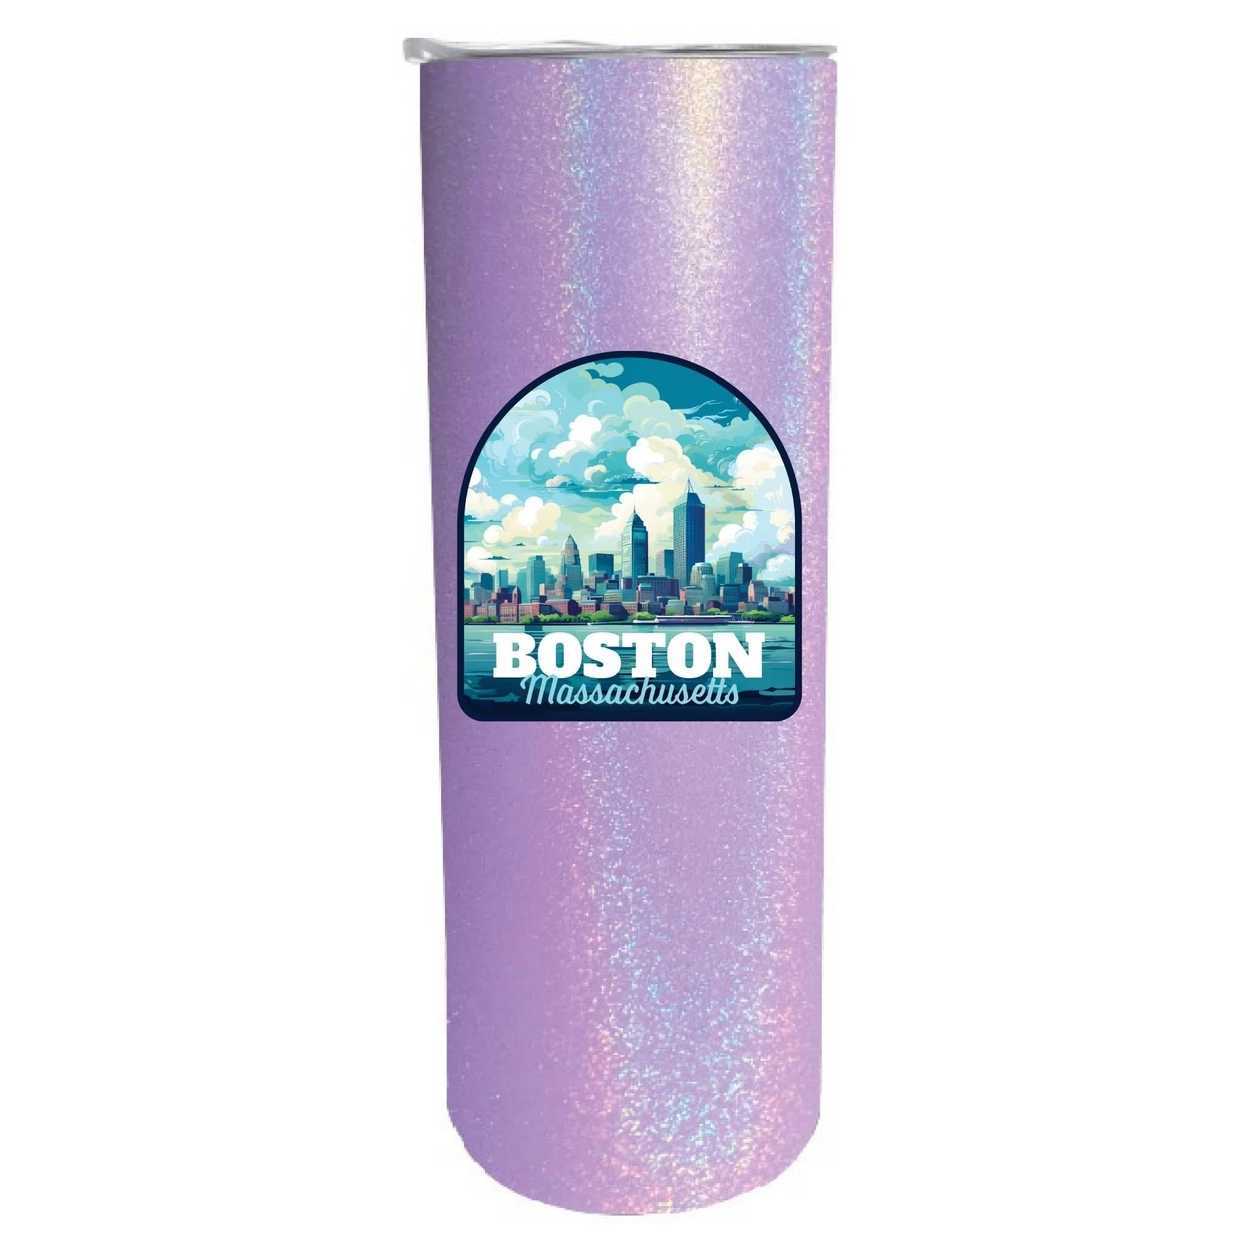 Boston Massachusetts A Souvenir 20 Oz Insulated Skinny Tumbler Glitter - Black Glitter,,Single